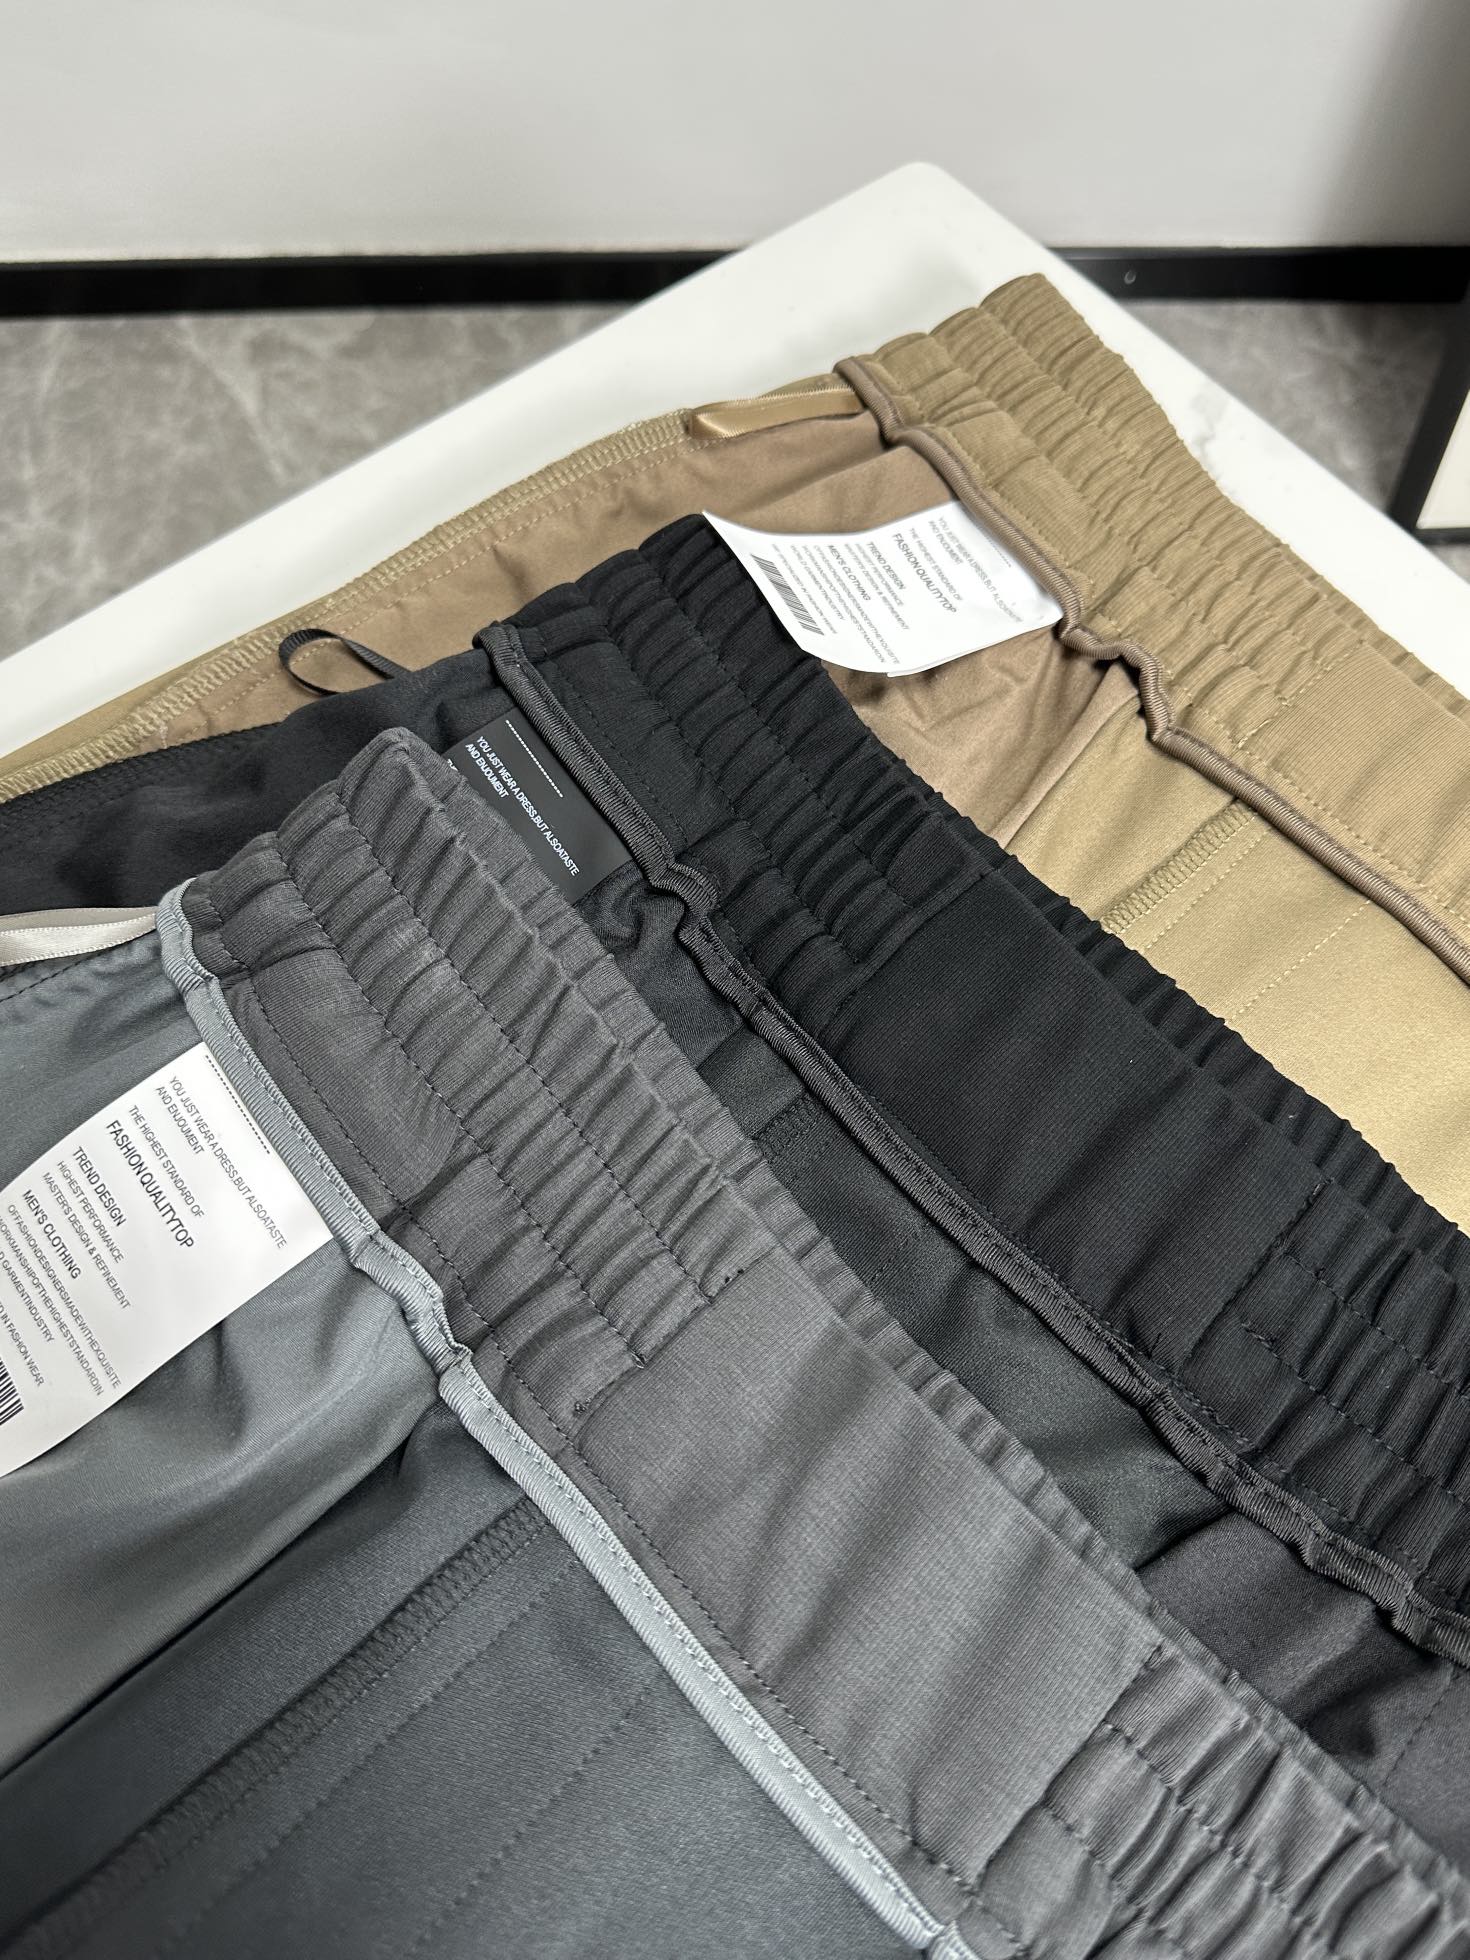 欧货D迪蓝家-24ss春夏新款进口纯棉质地复合面料再见基础款帅气卫裤.....一线时尚品牌出色独到的设计